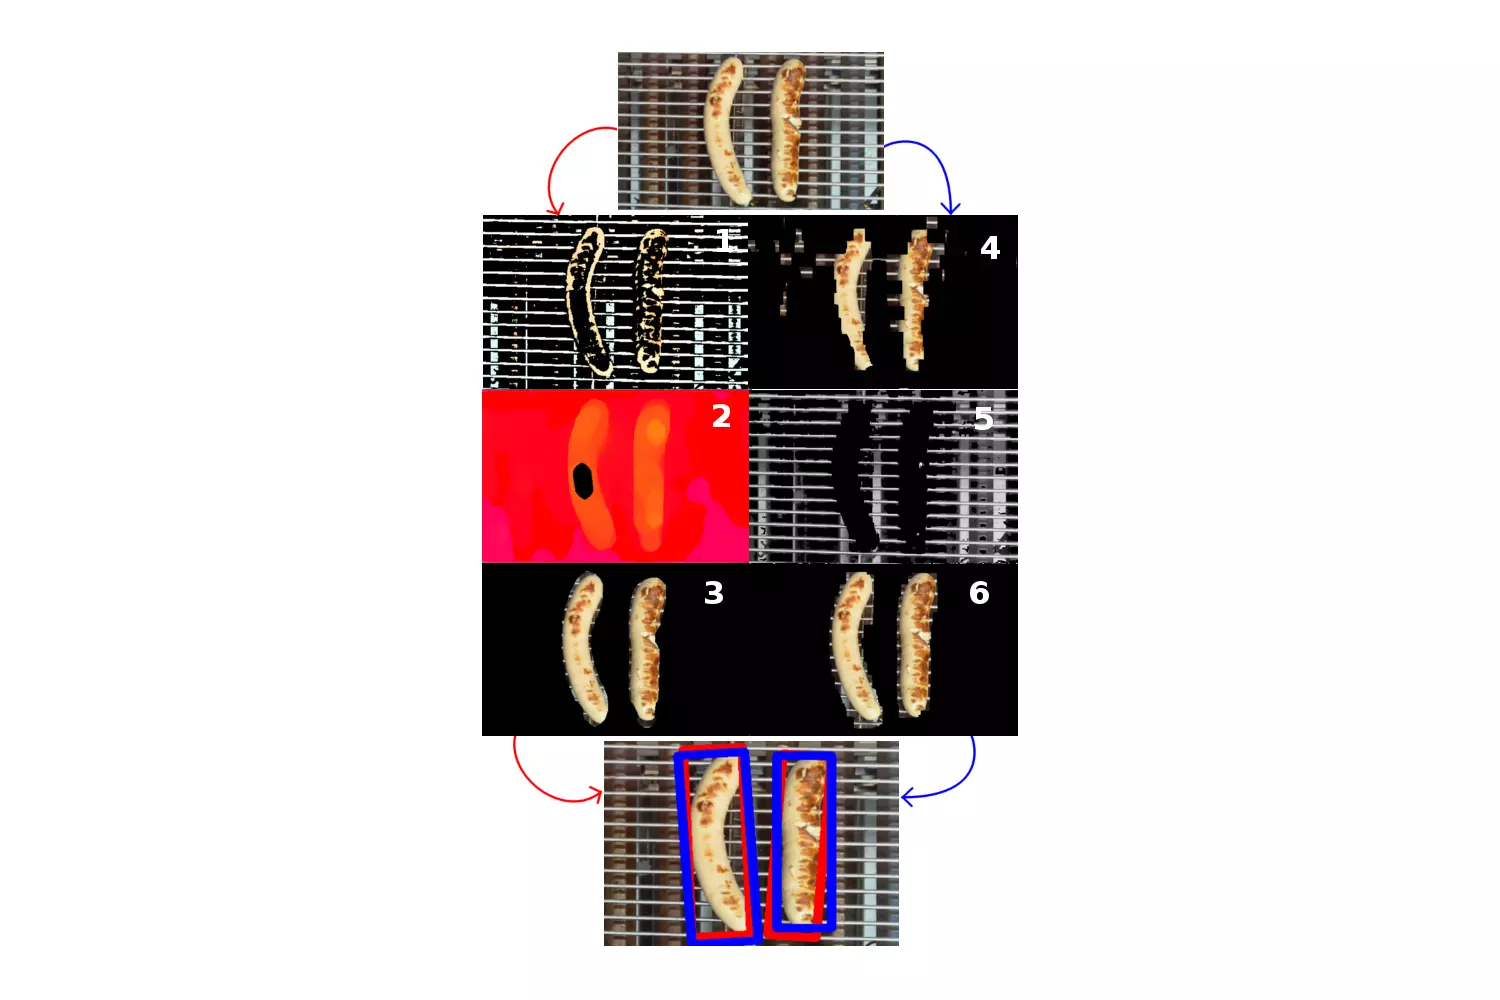 Um auf dem Kamerabild (oben) das Grillgut zu erkennen (unten), werden diverse Filter angewendet: Konturen hervorheben (1); Farbunterschiede verstärken (2); reflektierende Flächen entfernen (4); die grossen Flächen vom Kamerabild subtrahieren (3+6).